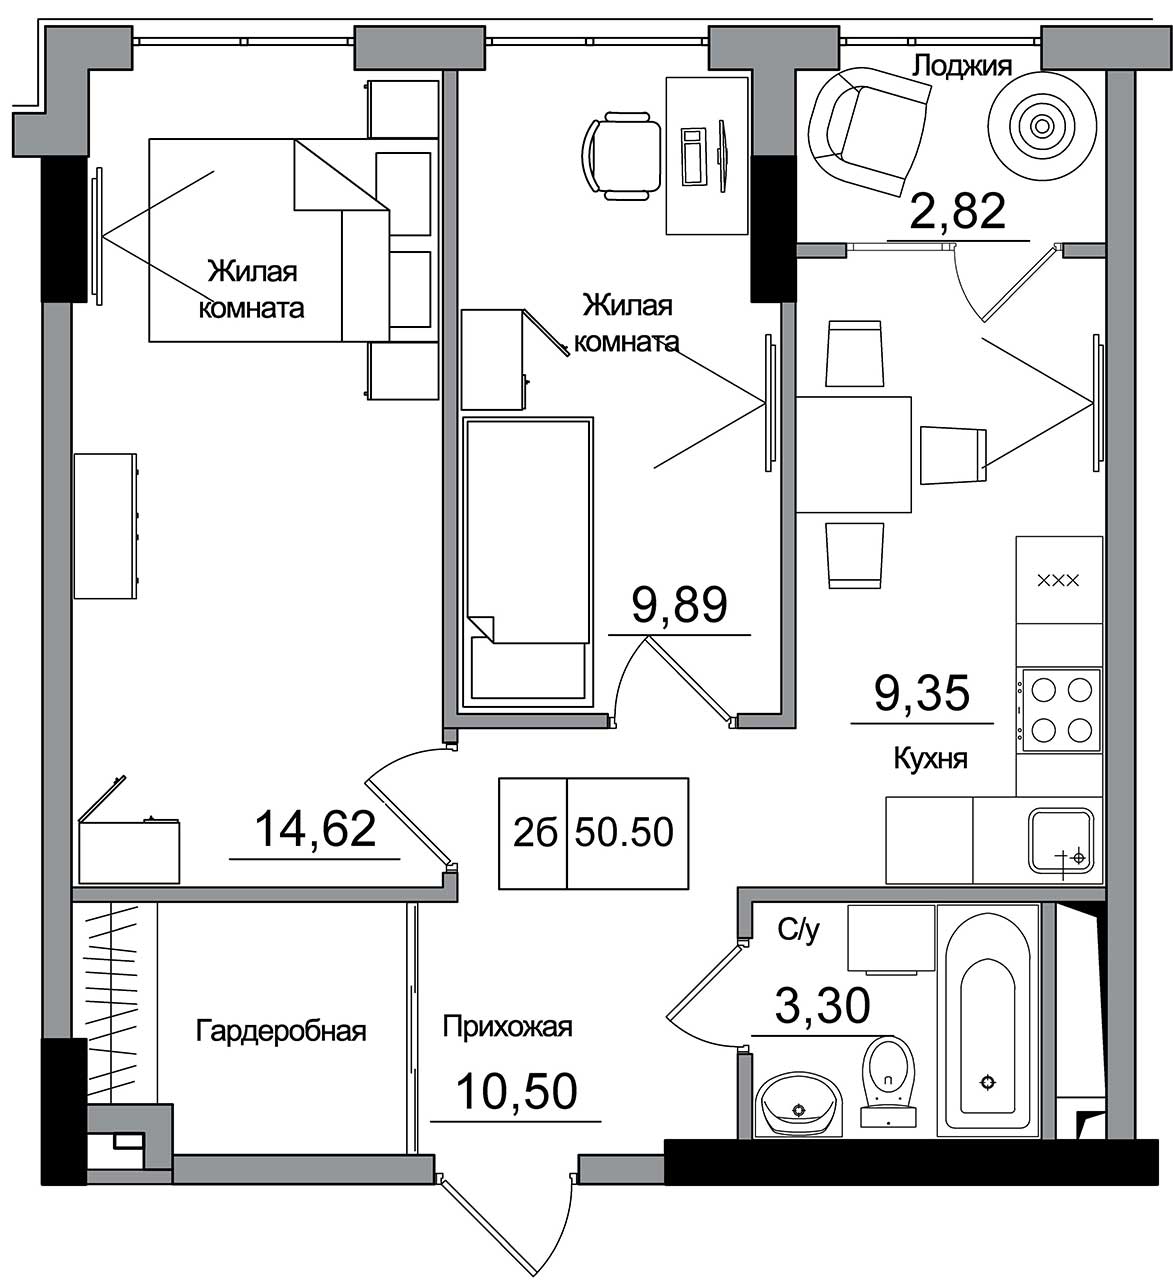 Планування 2-к квартира площею 50.5м2, AB-16-01/00007.